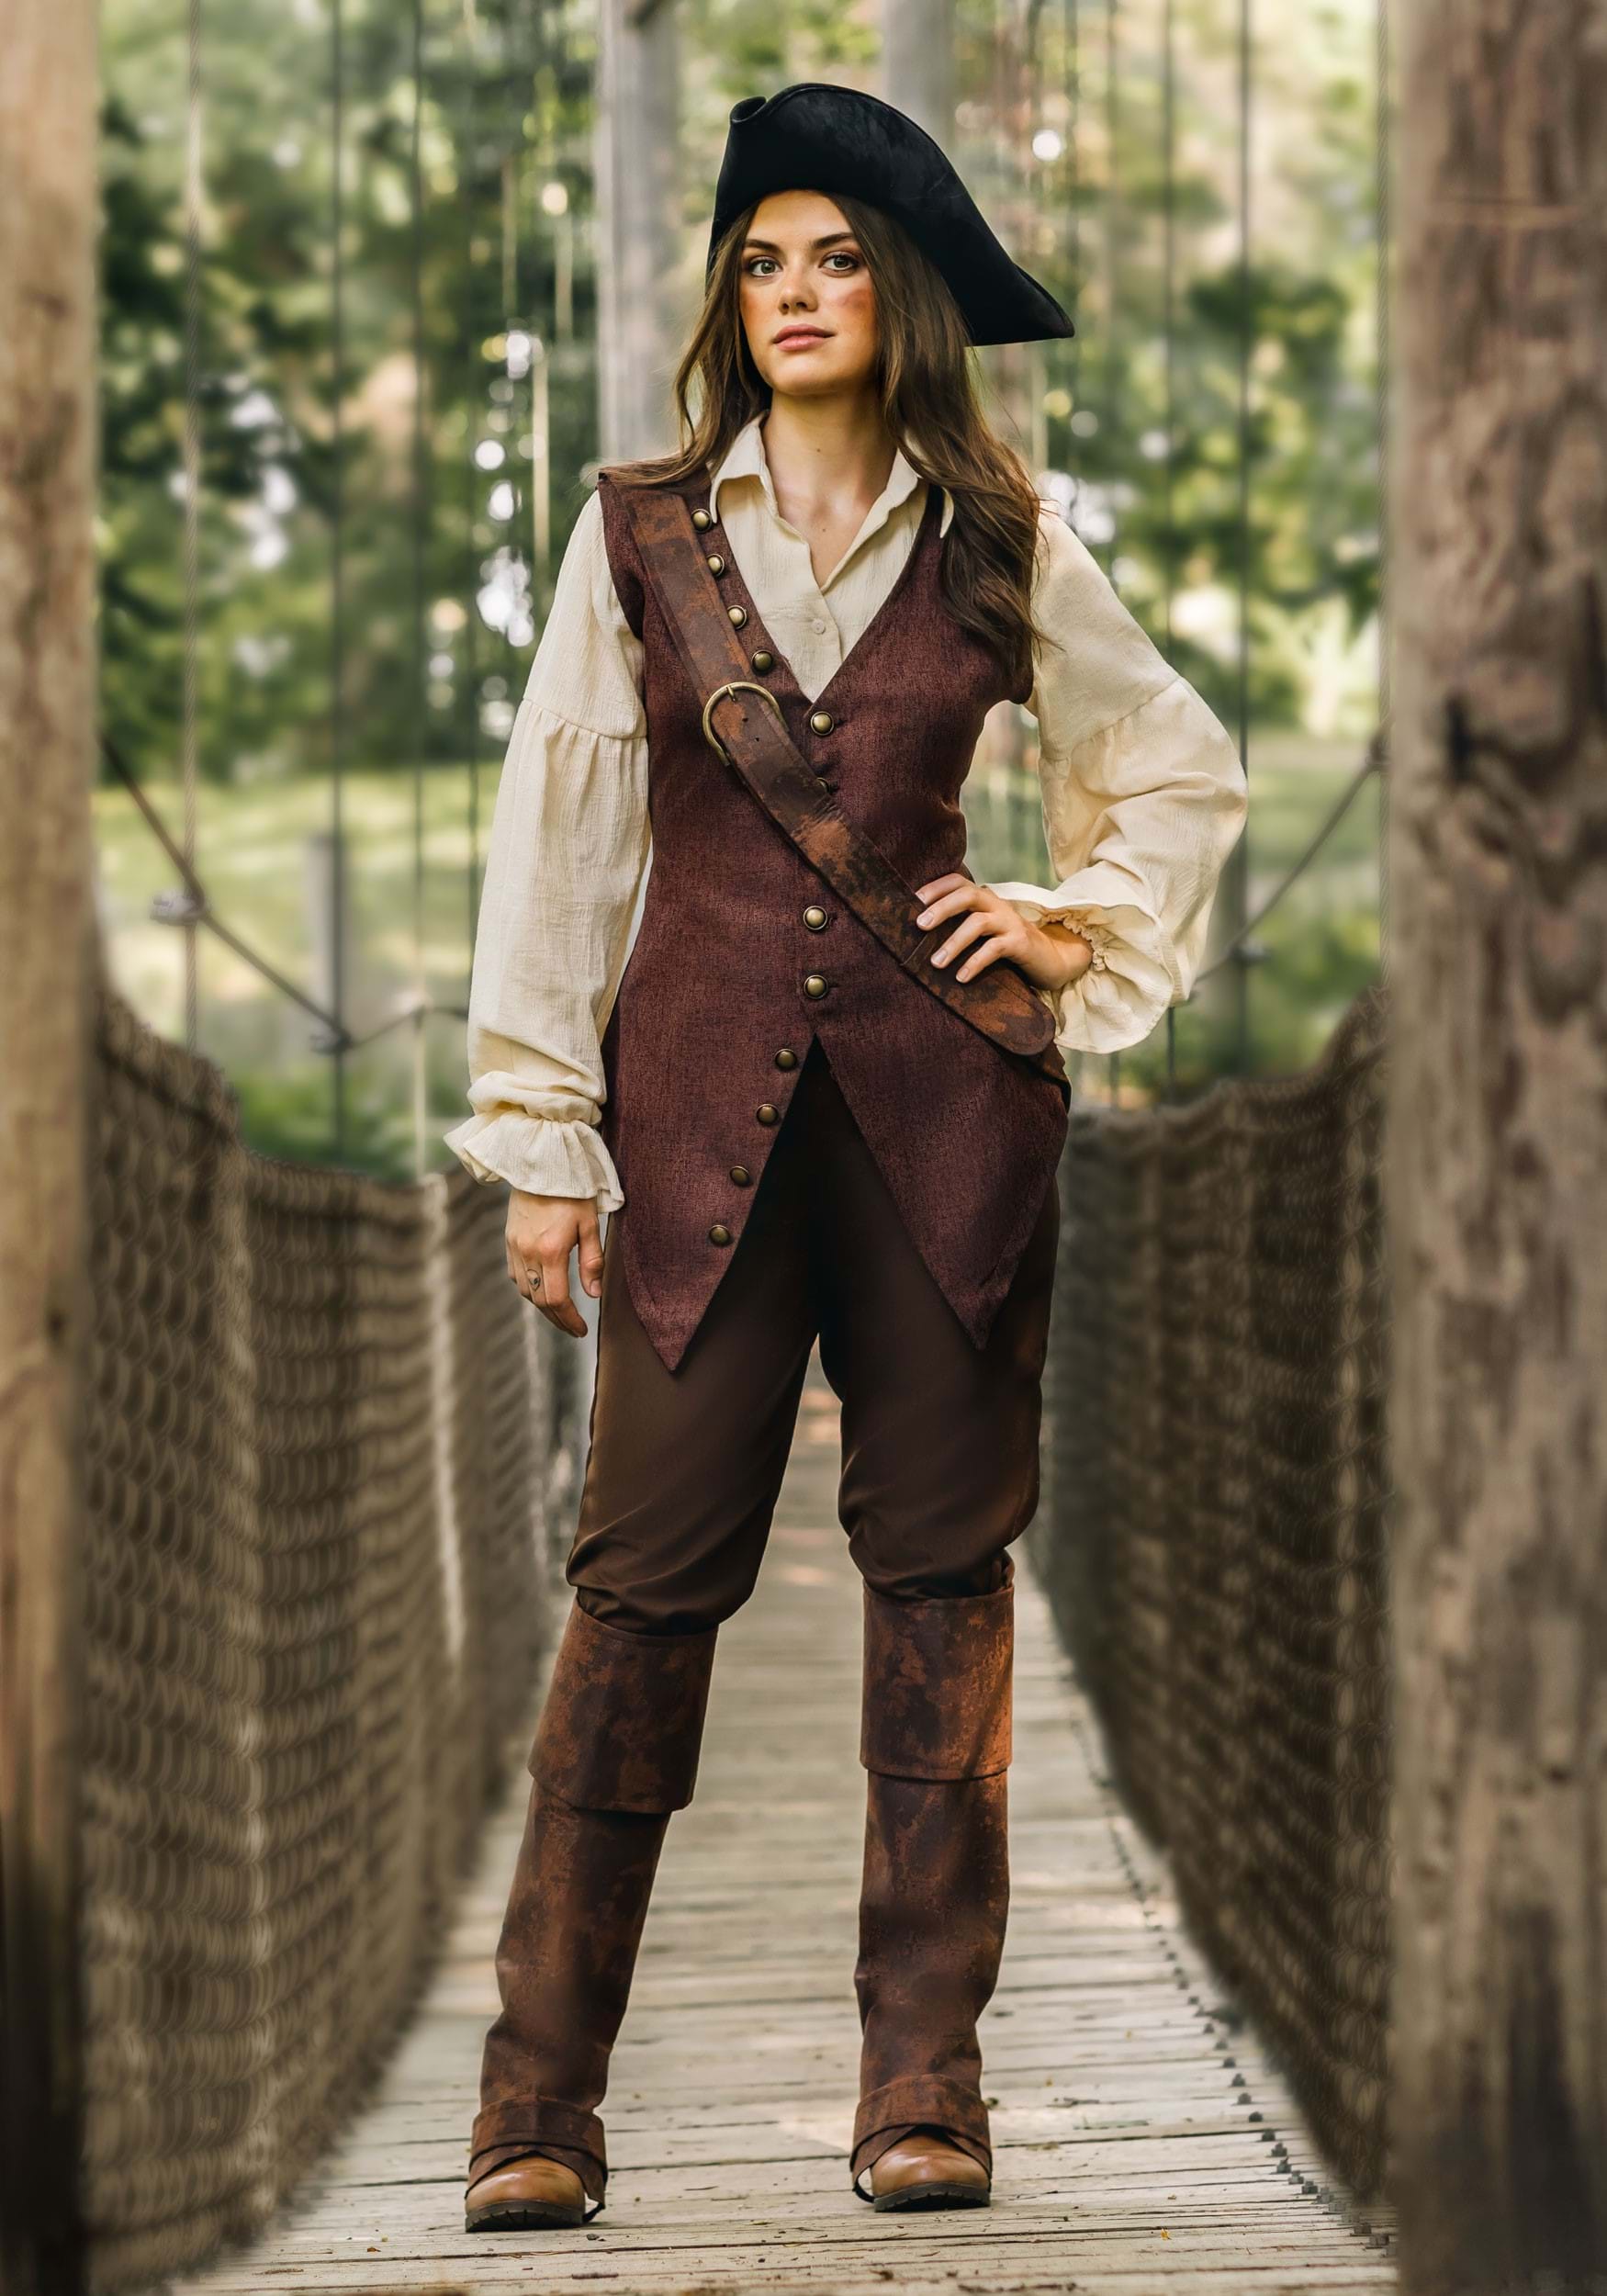 Elizabeth Swann Costume